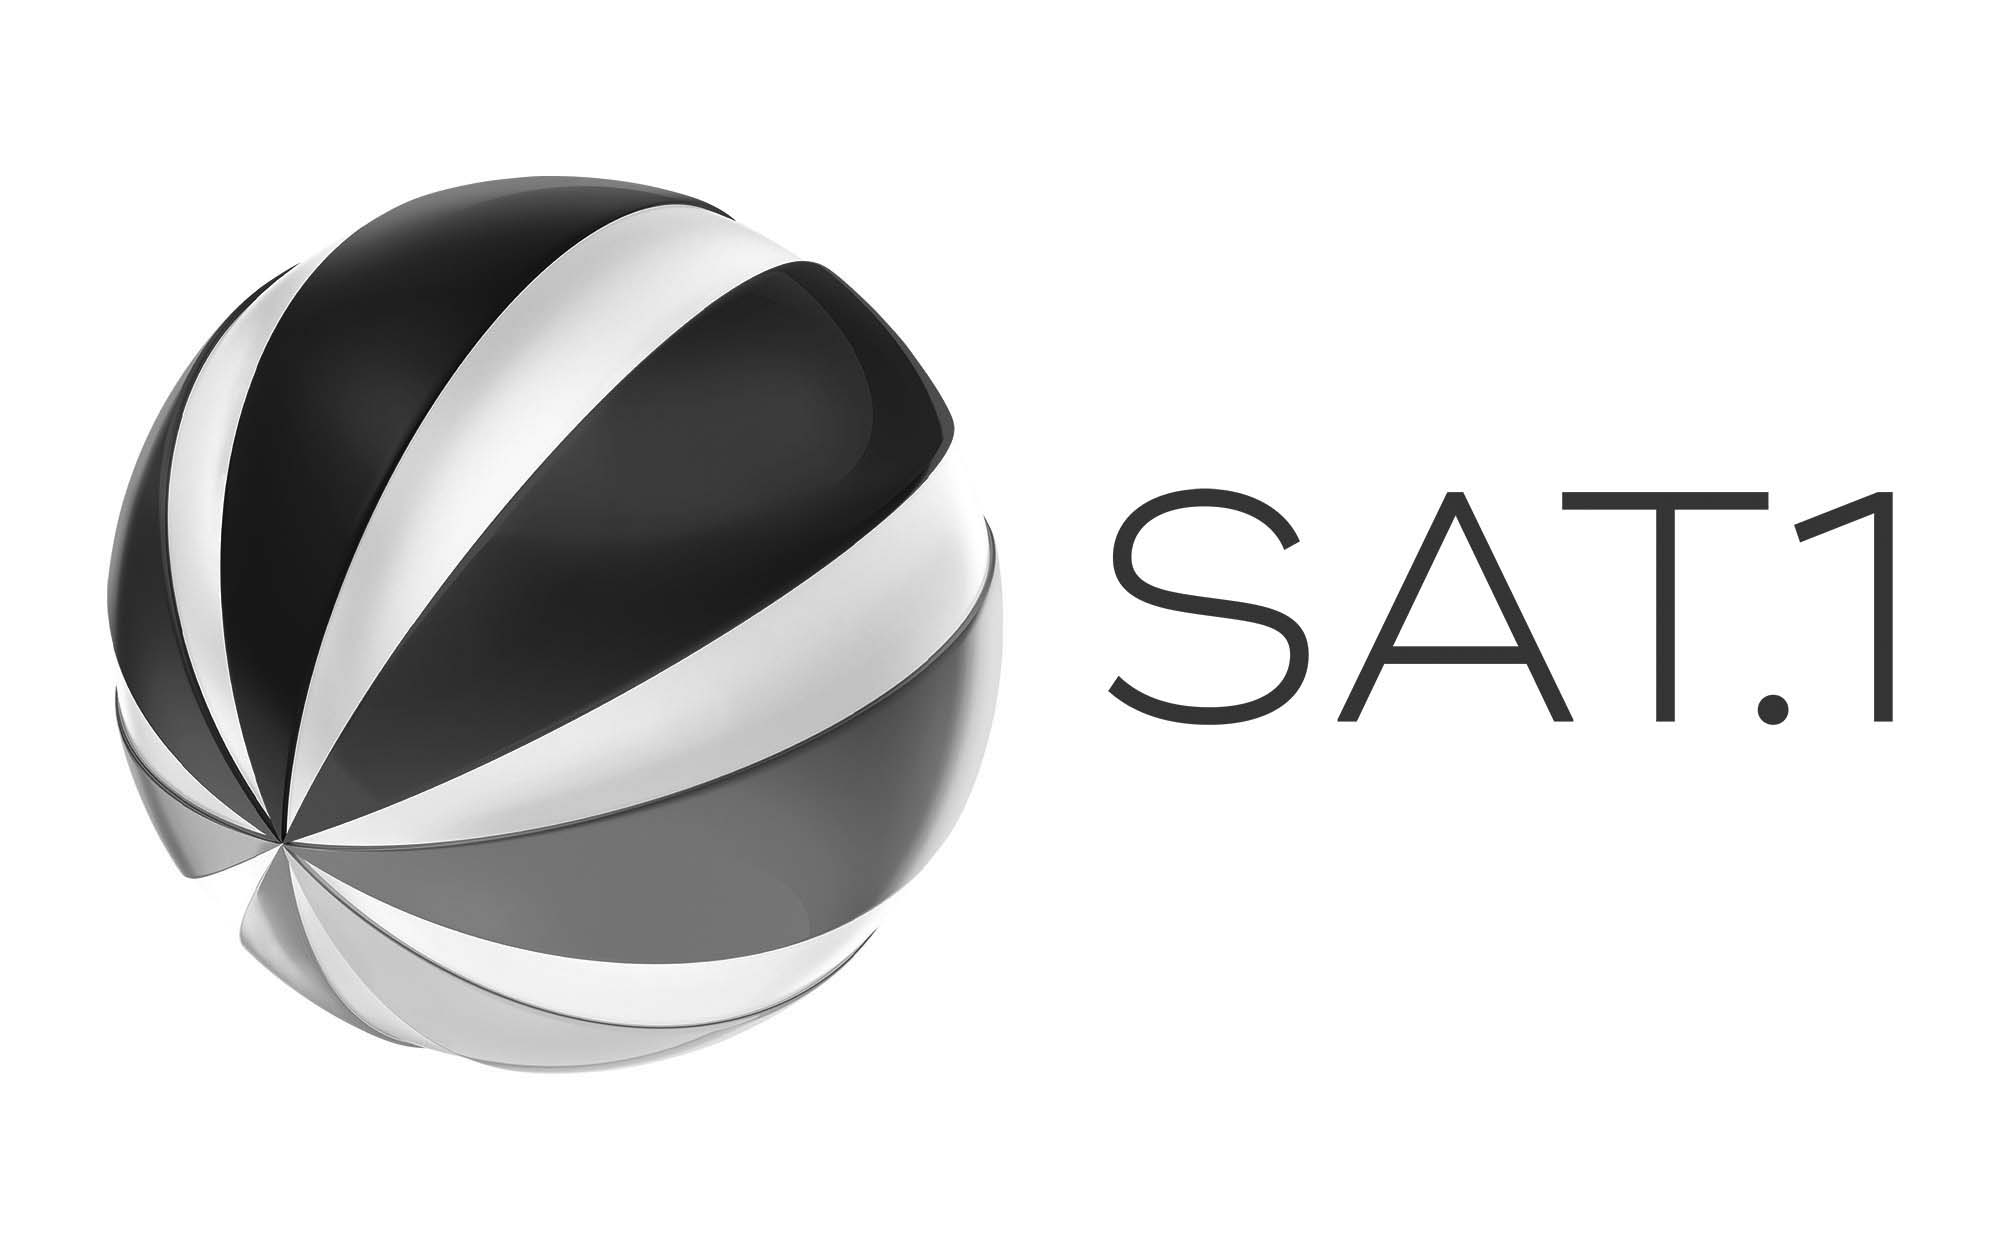 sat1 logo rgb